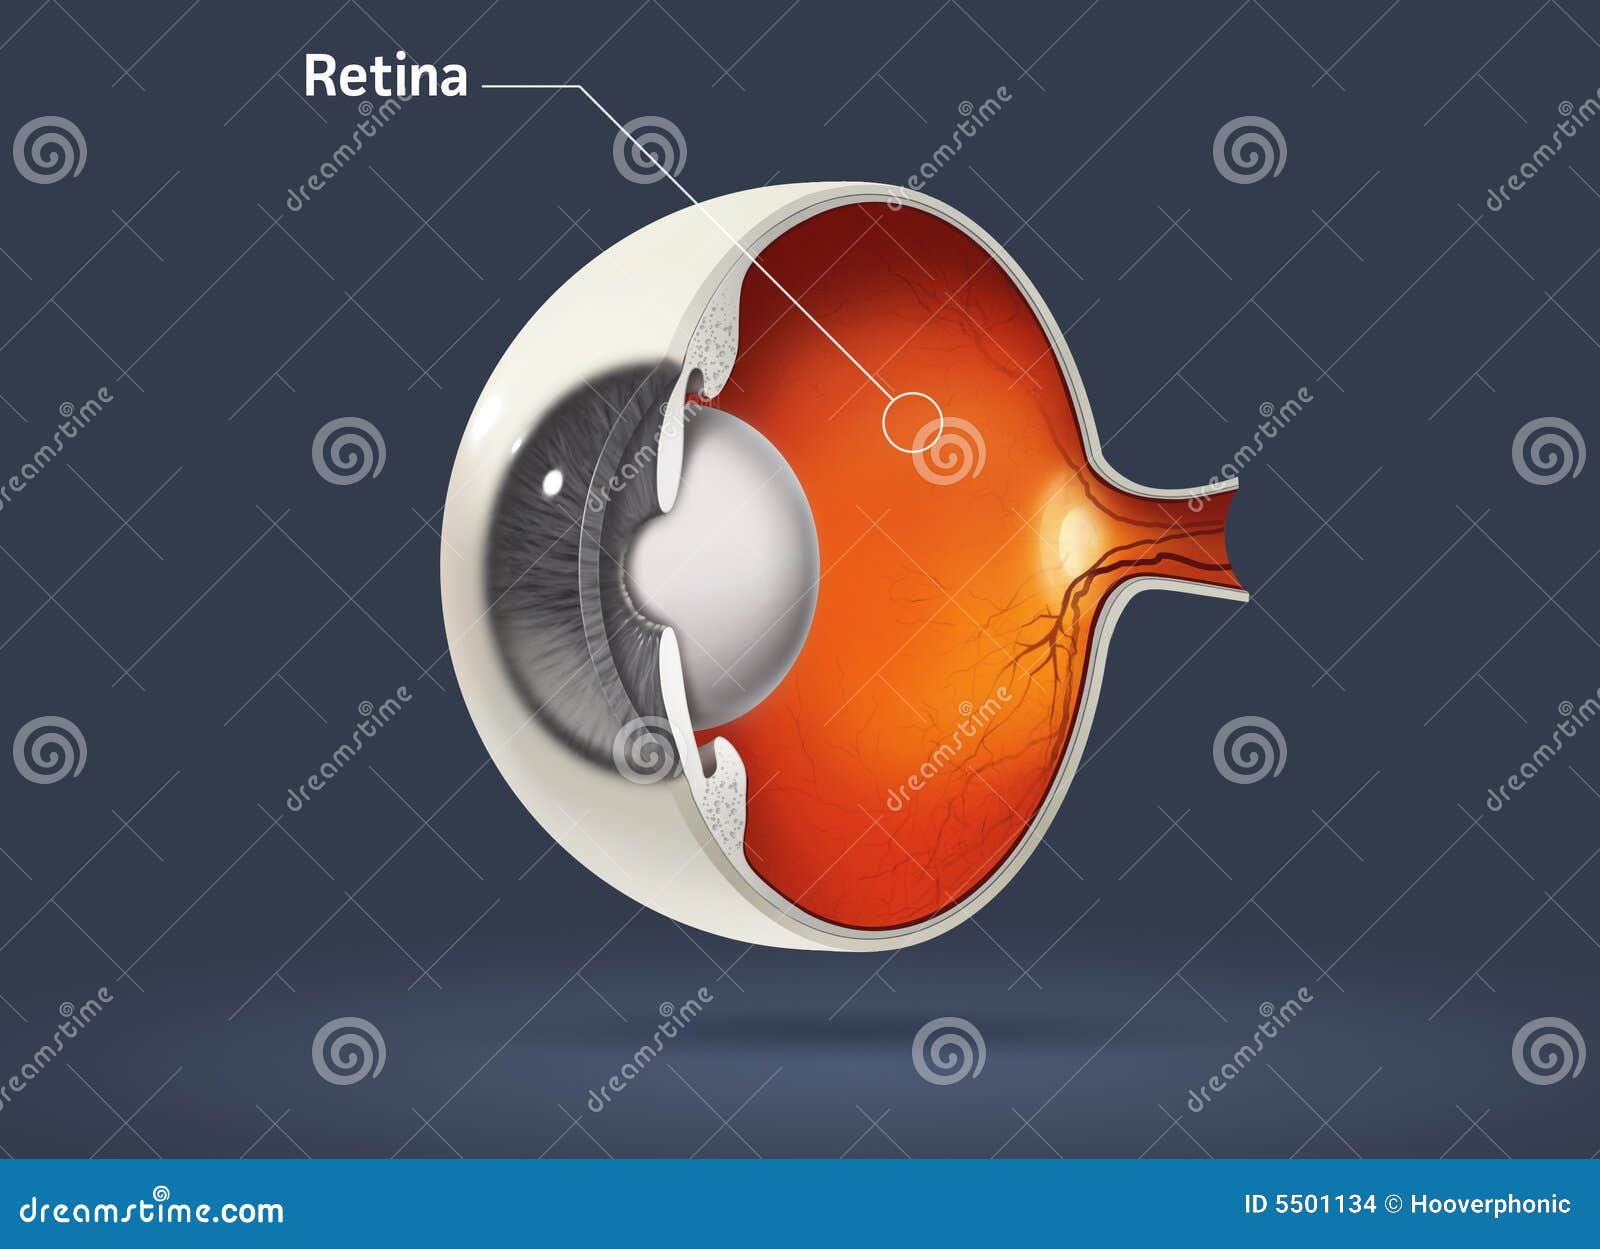 human eye - retina